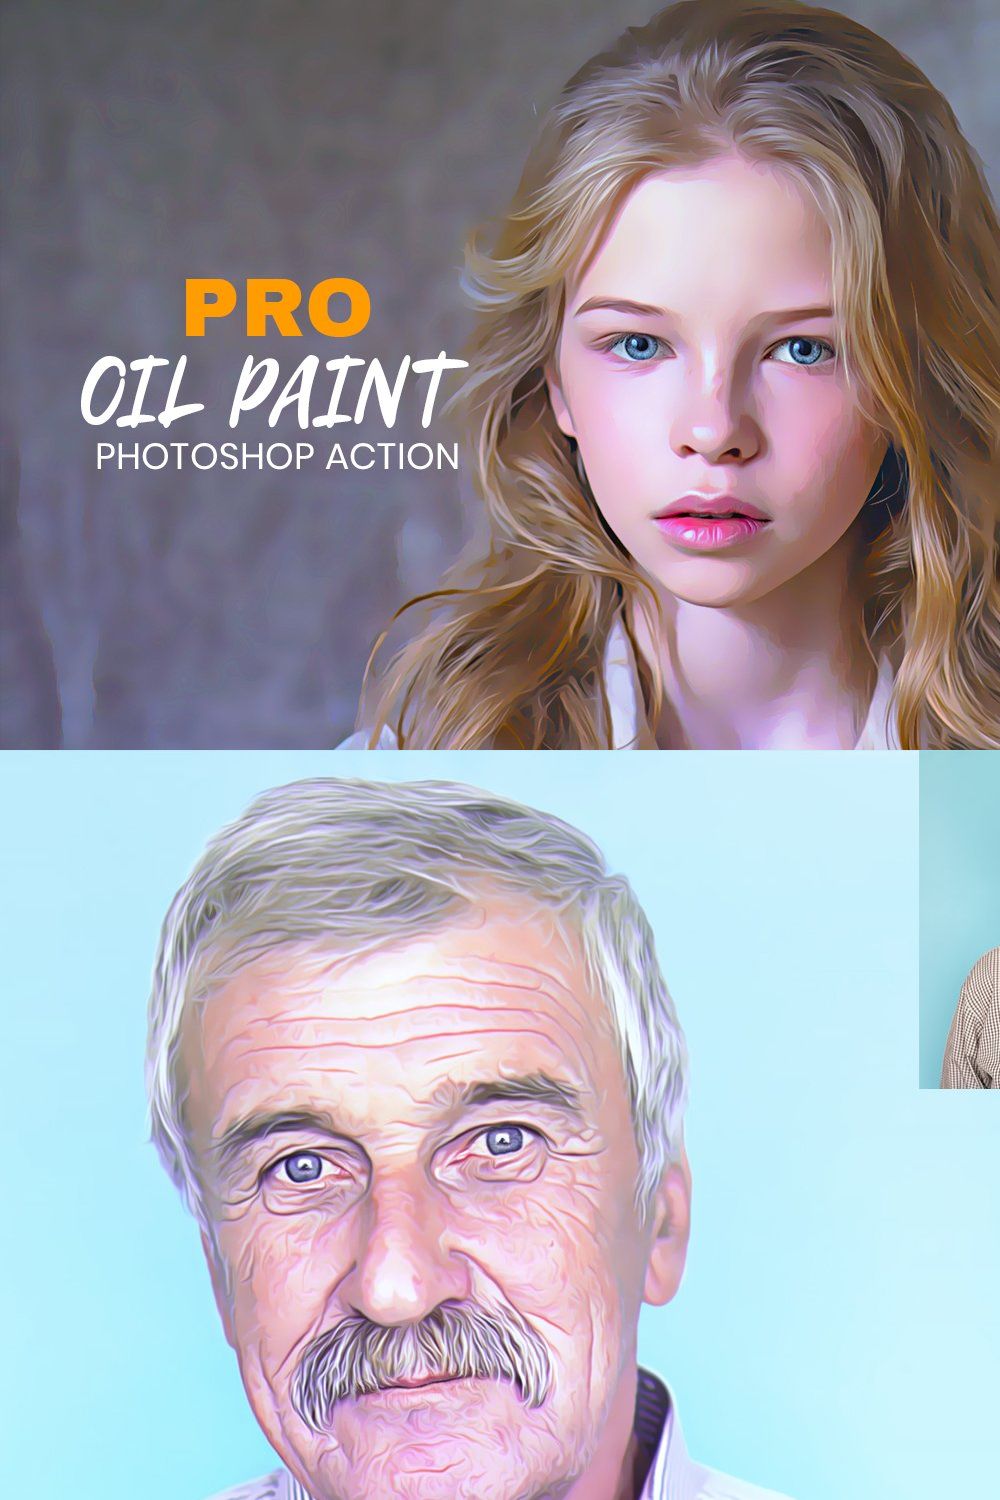 Pro Oil Paint Photoshop Action pinterest preview image.